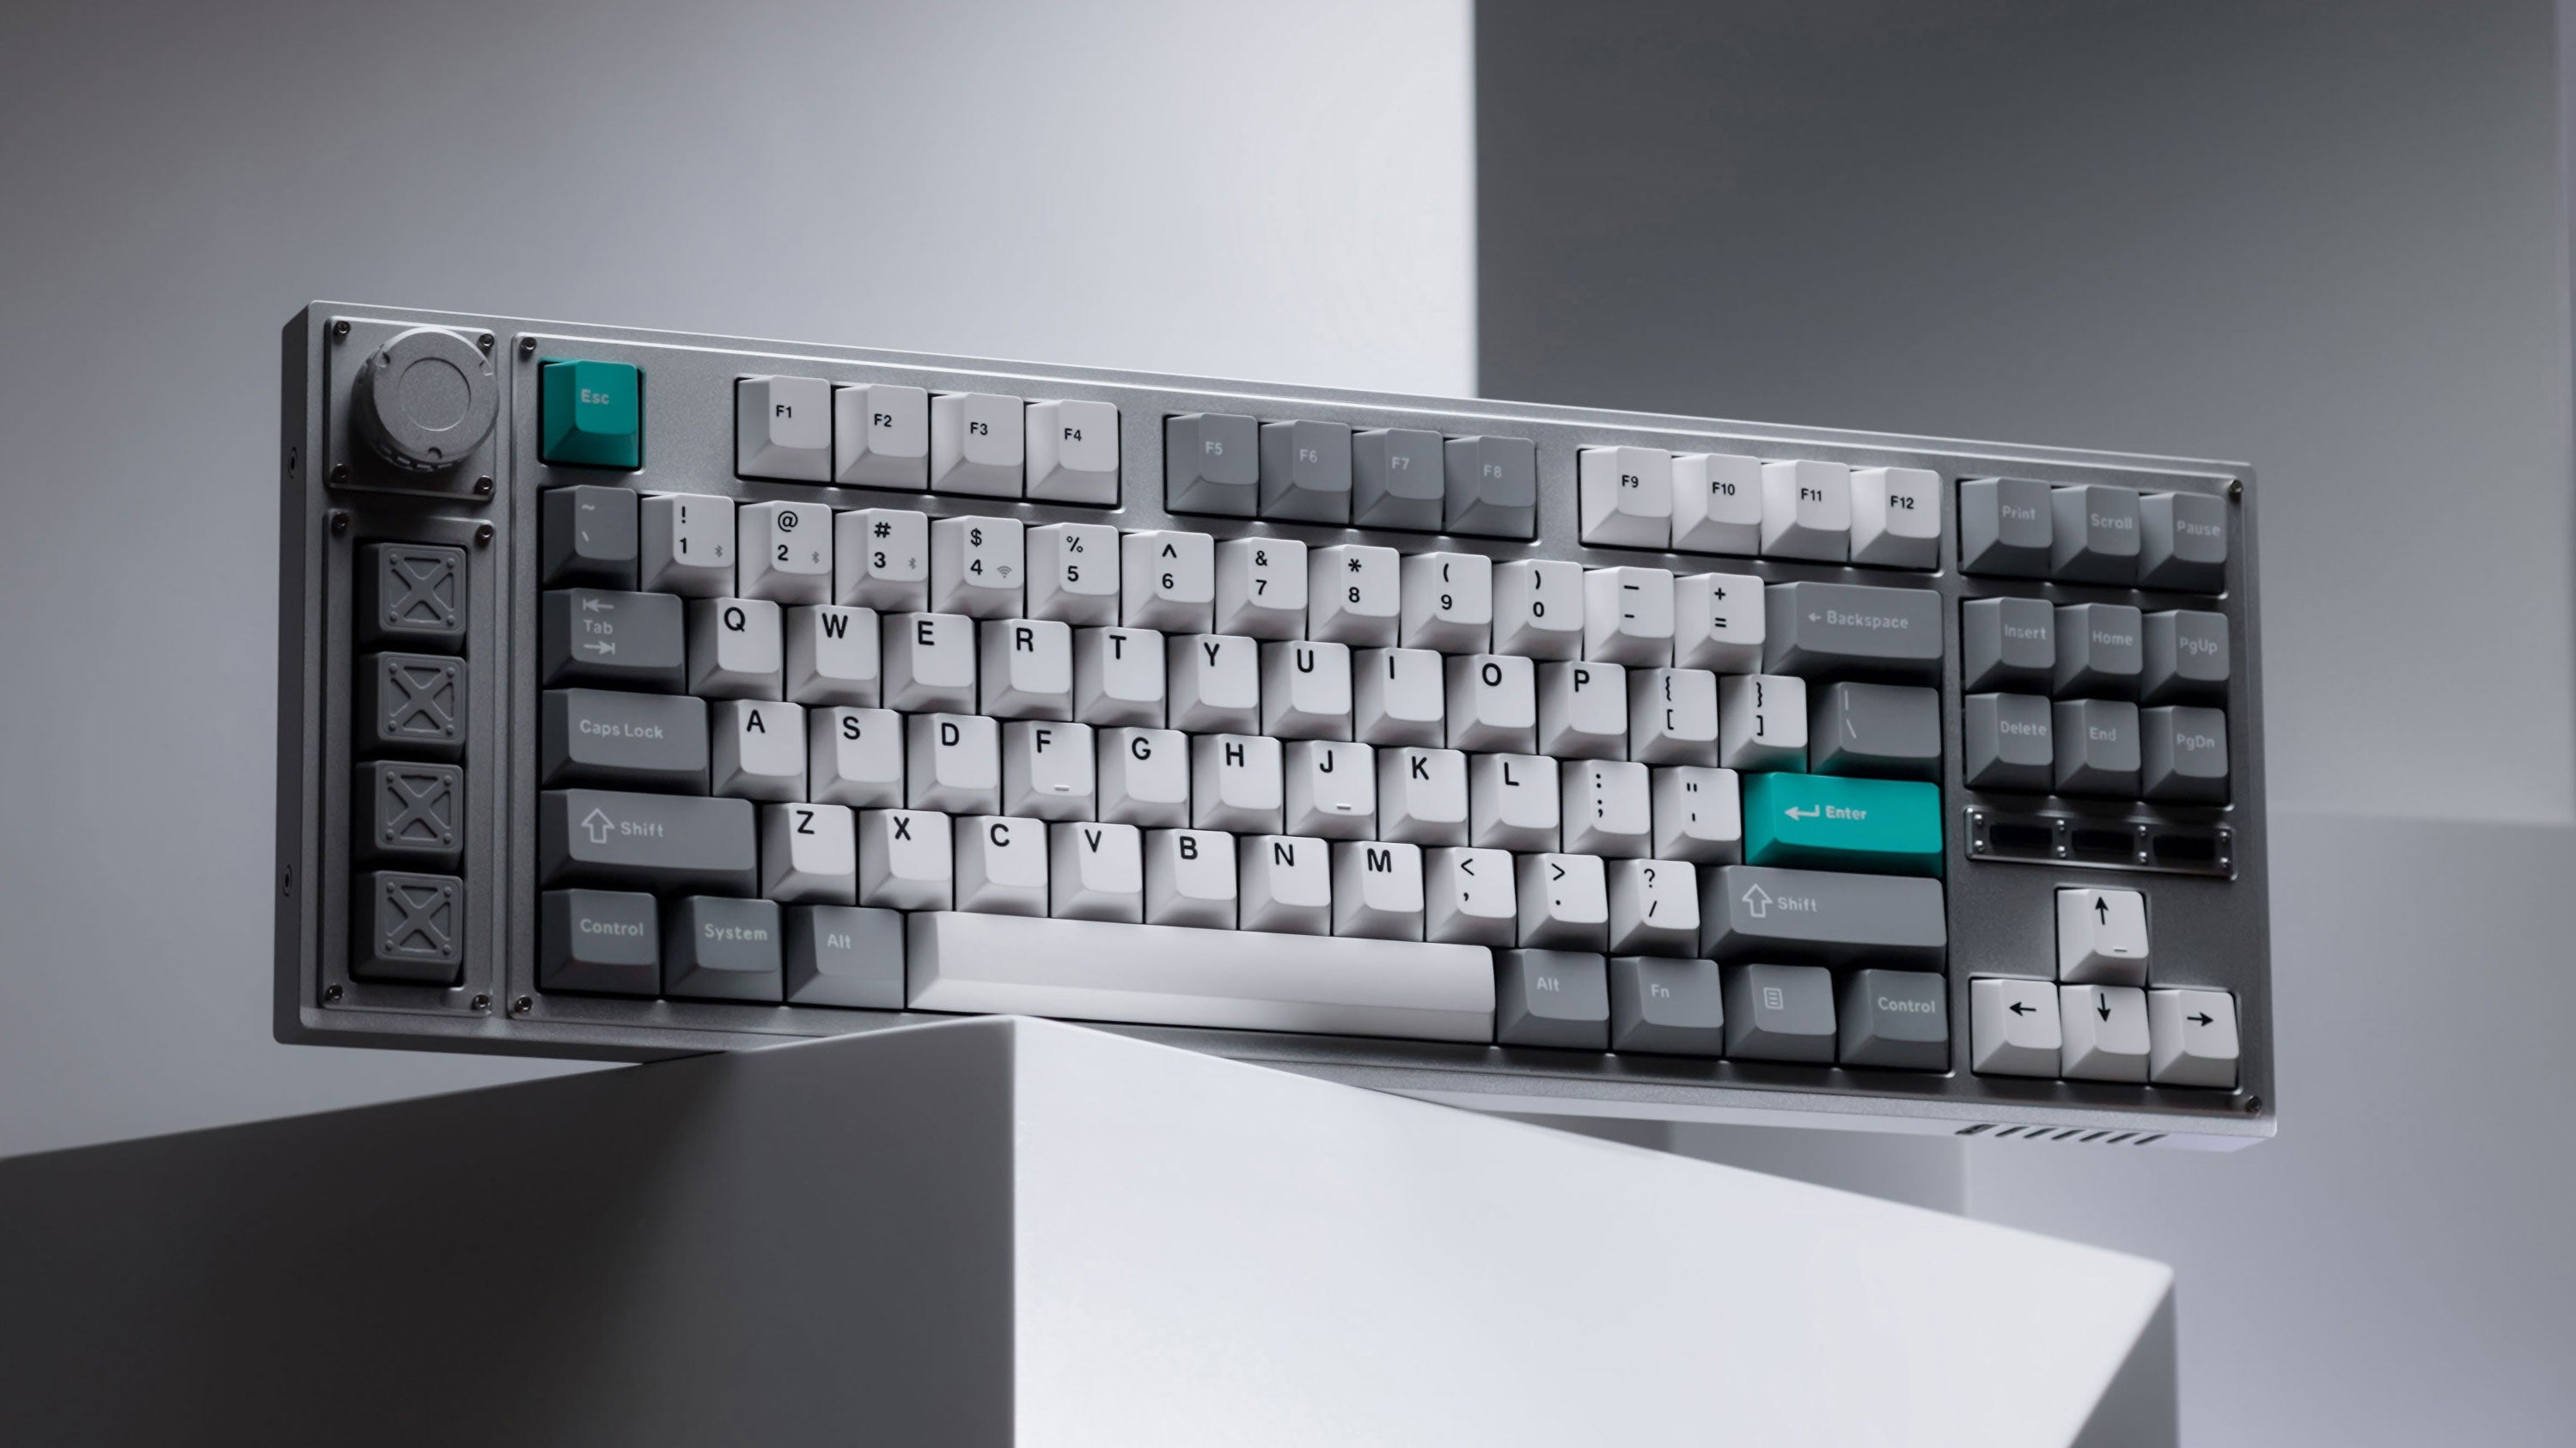 Keychron Q1 Pro Custom Mechanical Keyboard